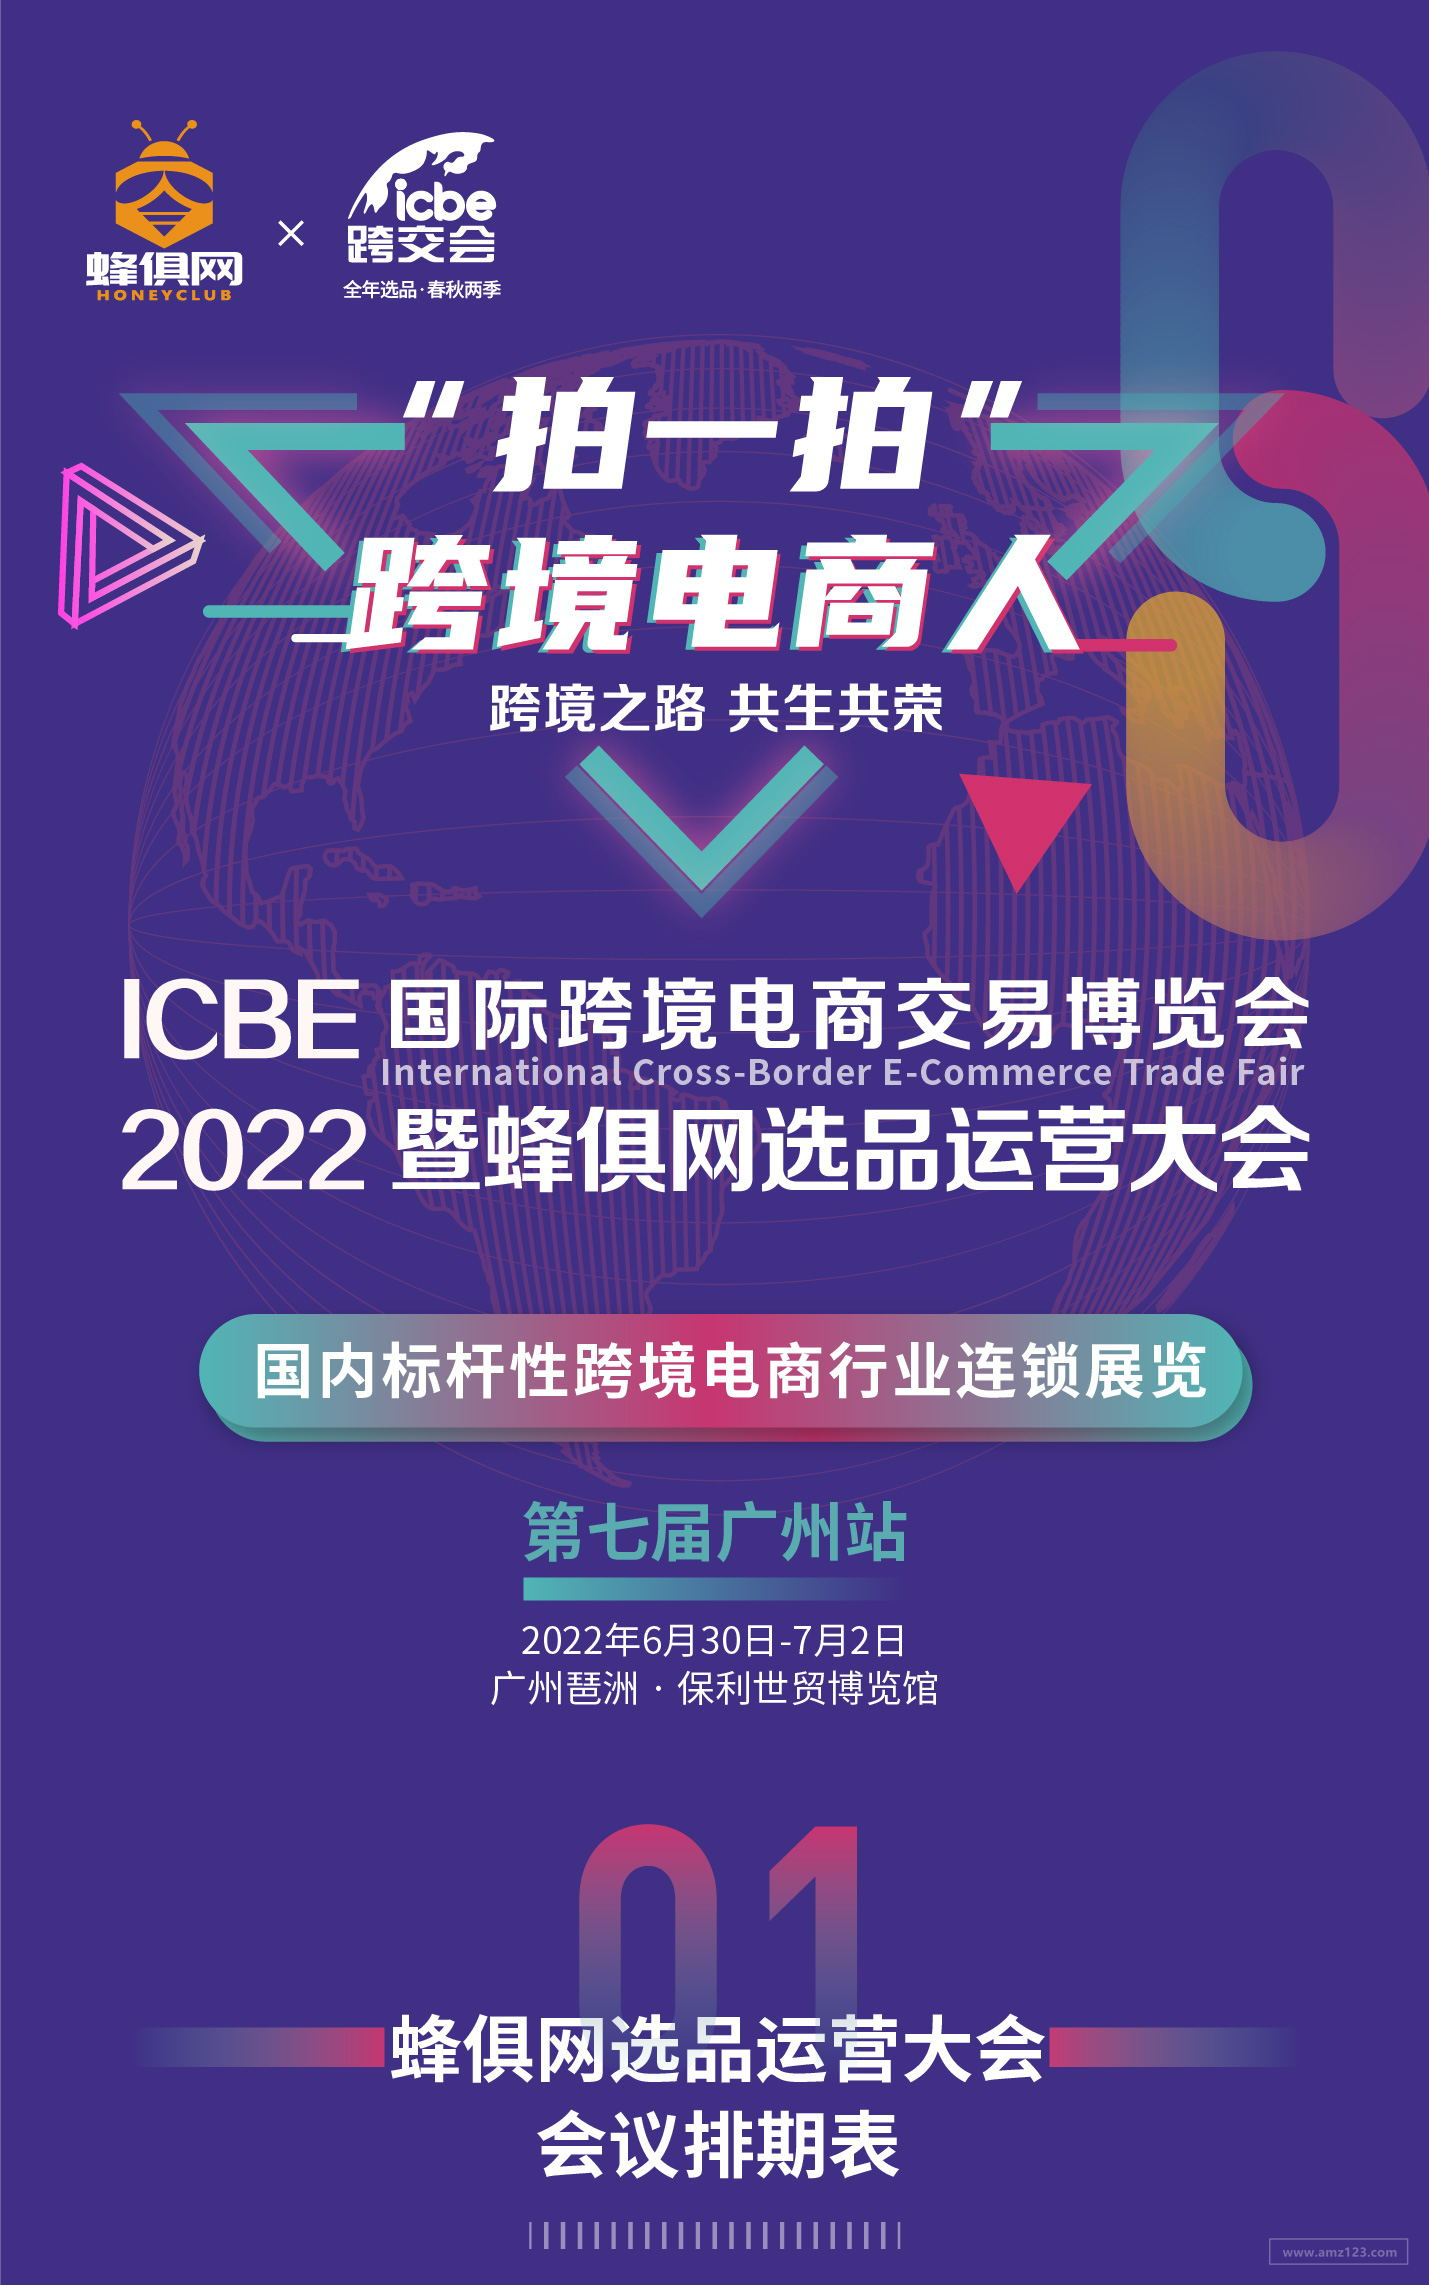 2022 ICBE广州国际跨境电商交易博览会